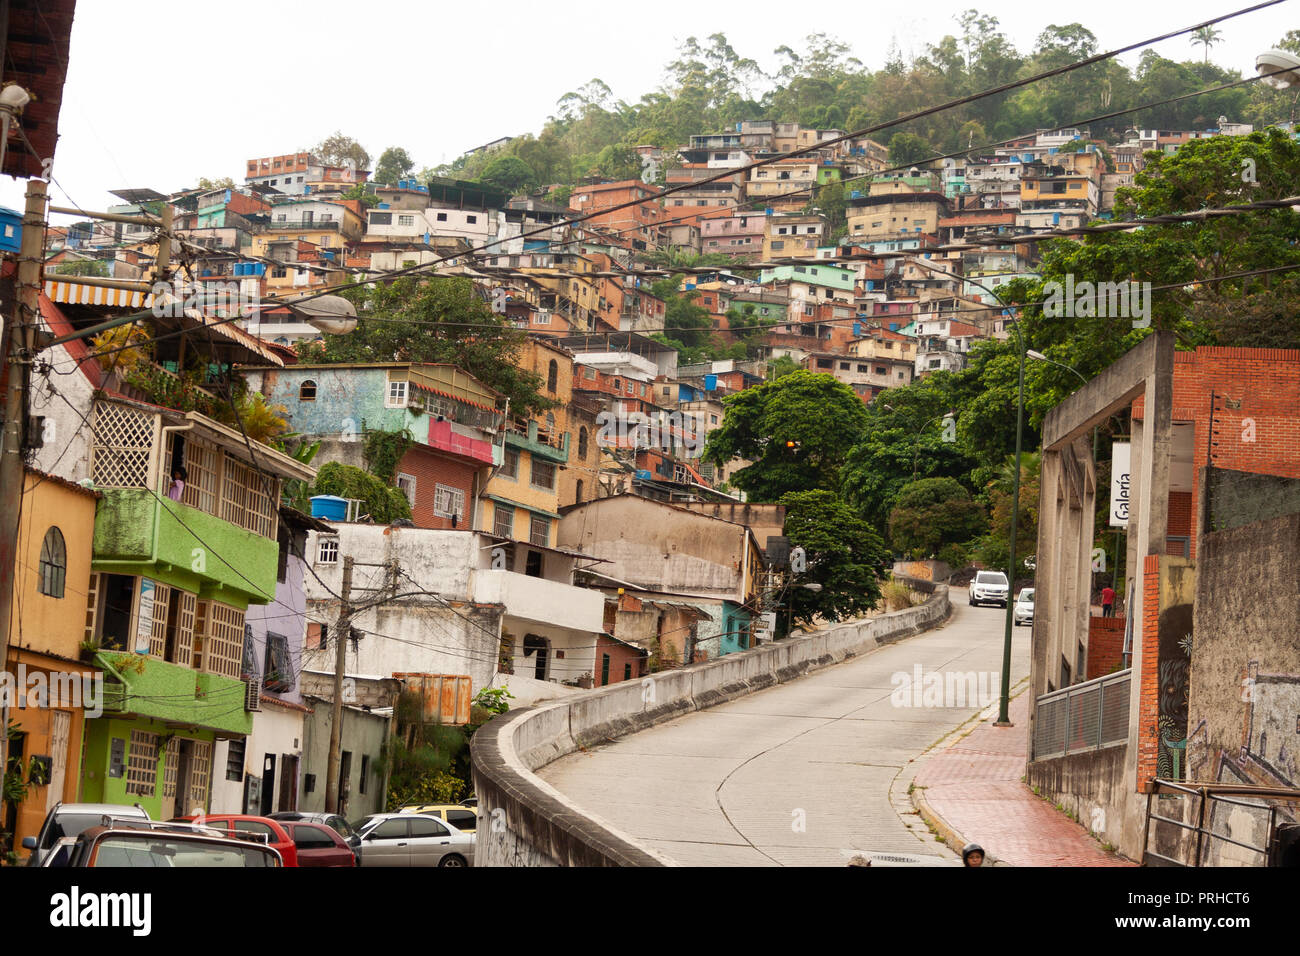 El Hatillo Caracas/Venezuela Etat de Miranda 26/04/2018 L'assainissement des taudis dans les collines. Banque D'Images